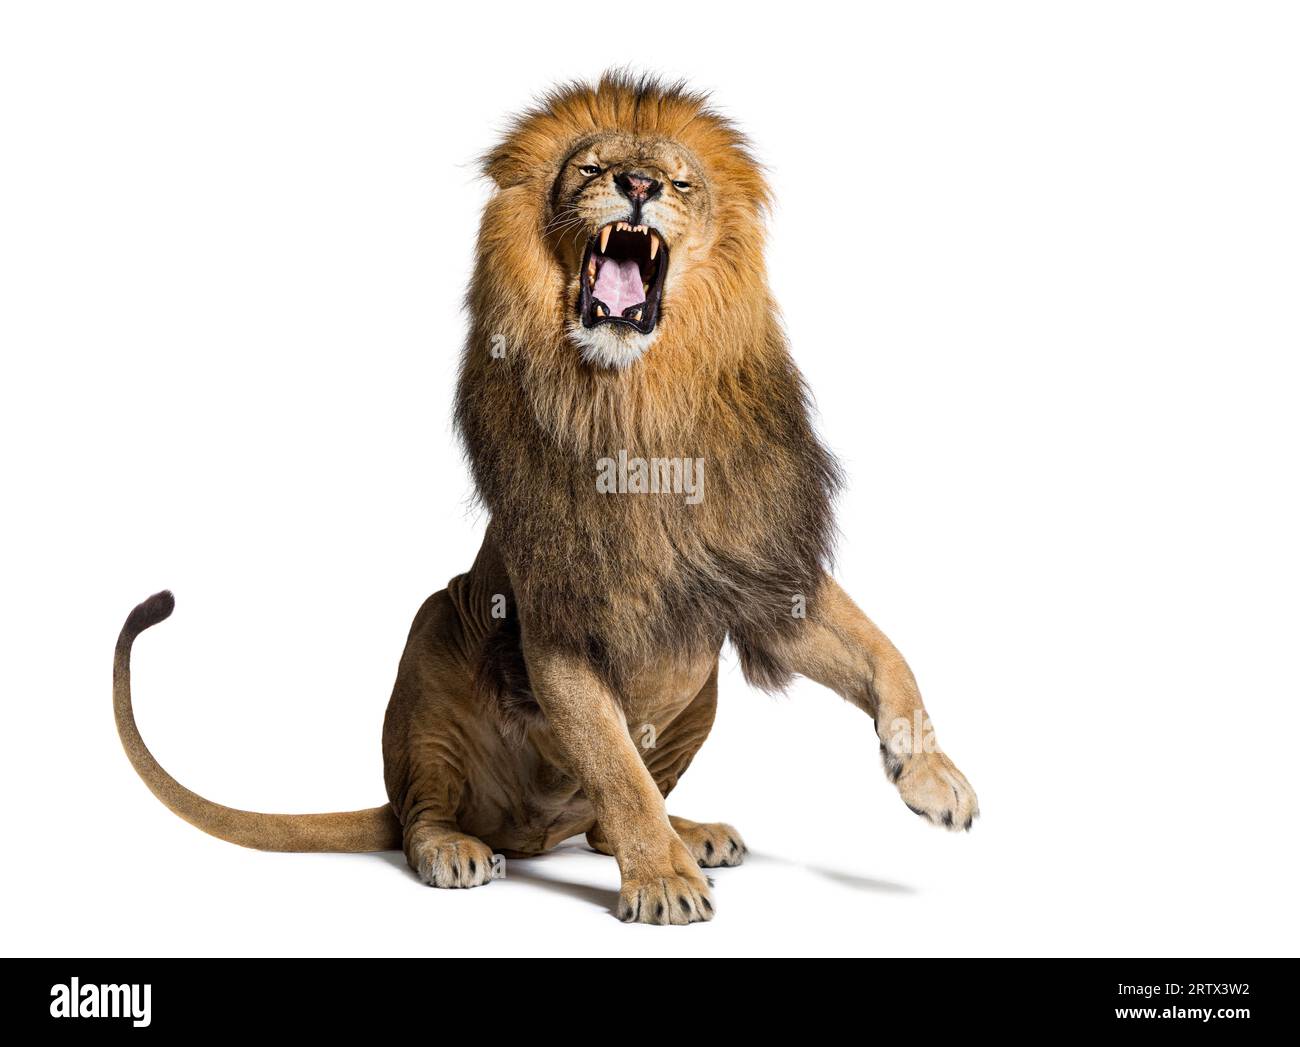 Löwe sitzt, zieht ein Gesicht, schaut auf die Kamera und zeigt ihre Zähne mit einer erhobenen Pfote, isoliert auf weiß Stockfoto